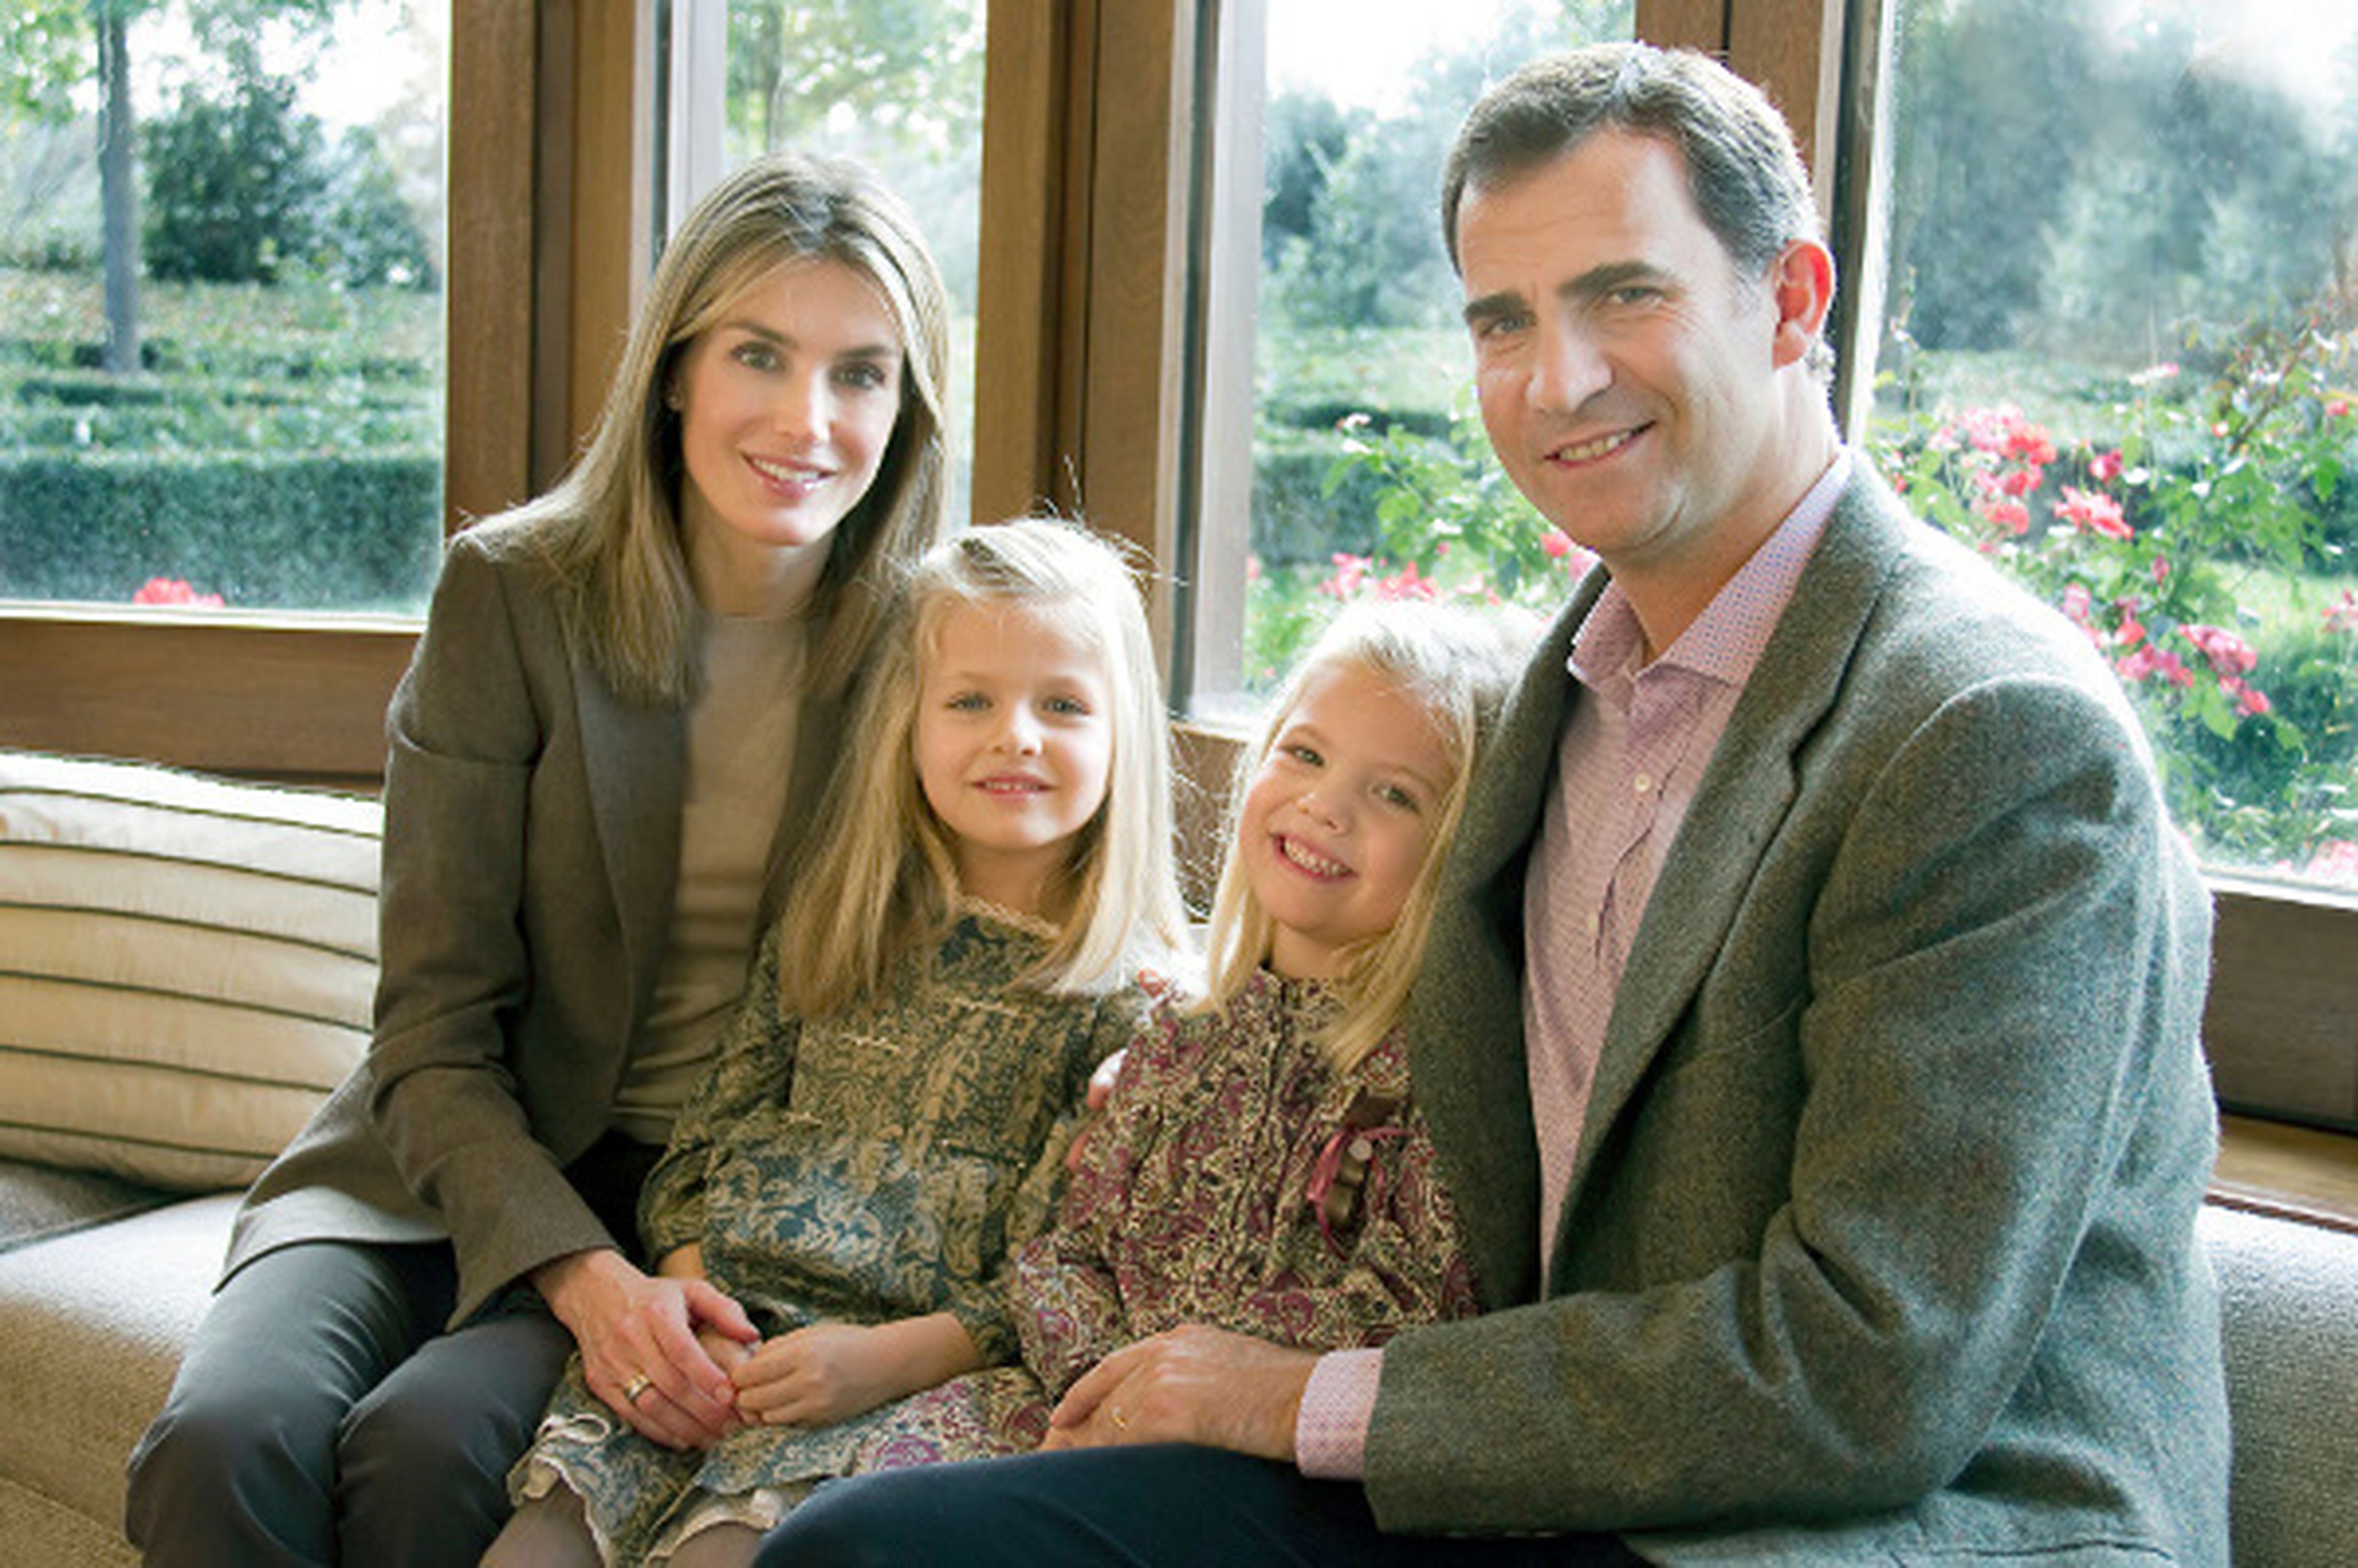 La princesa Leonor posa junto a su familia en la foto de la tarjeta navideña.